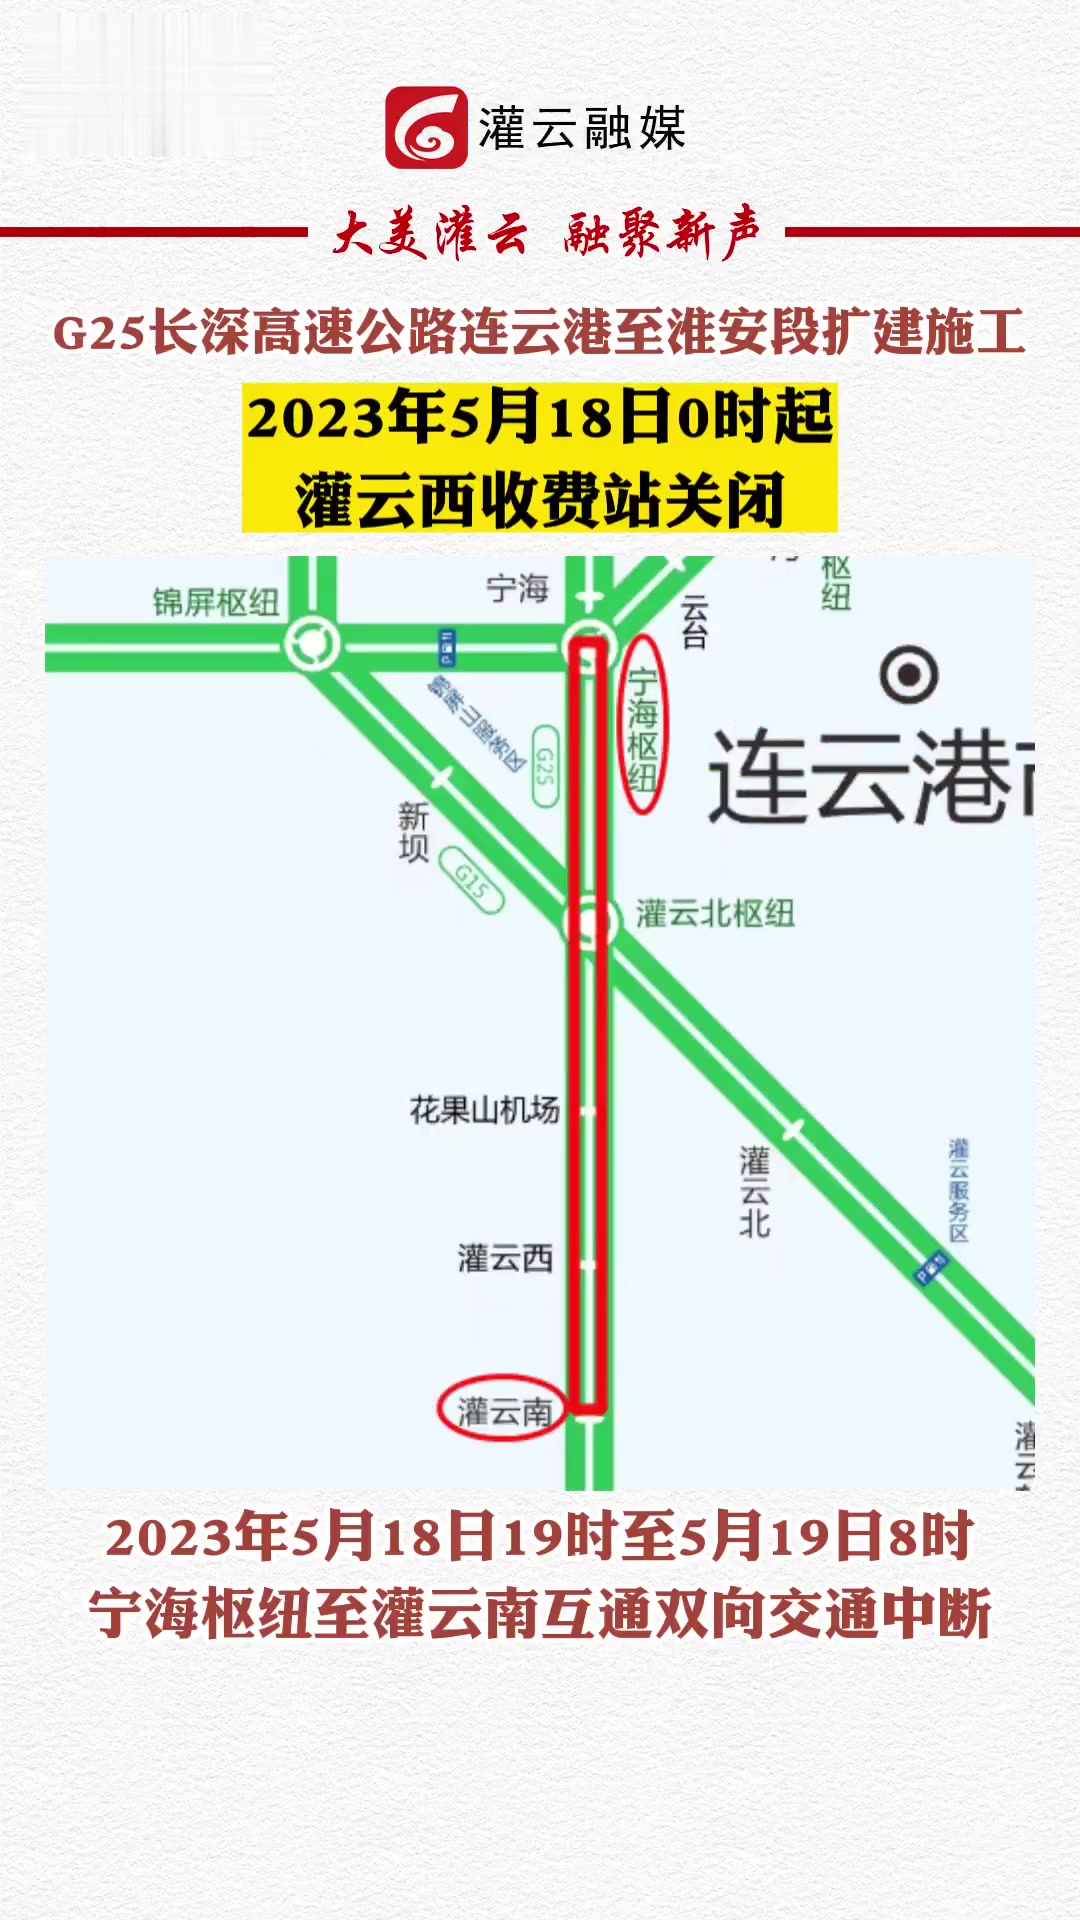 深汕高铁要来了！将在惠州设置惠州南/惠东2个站点-惠州购房网